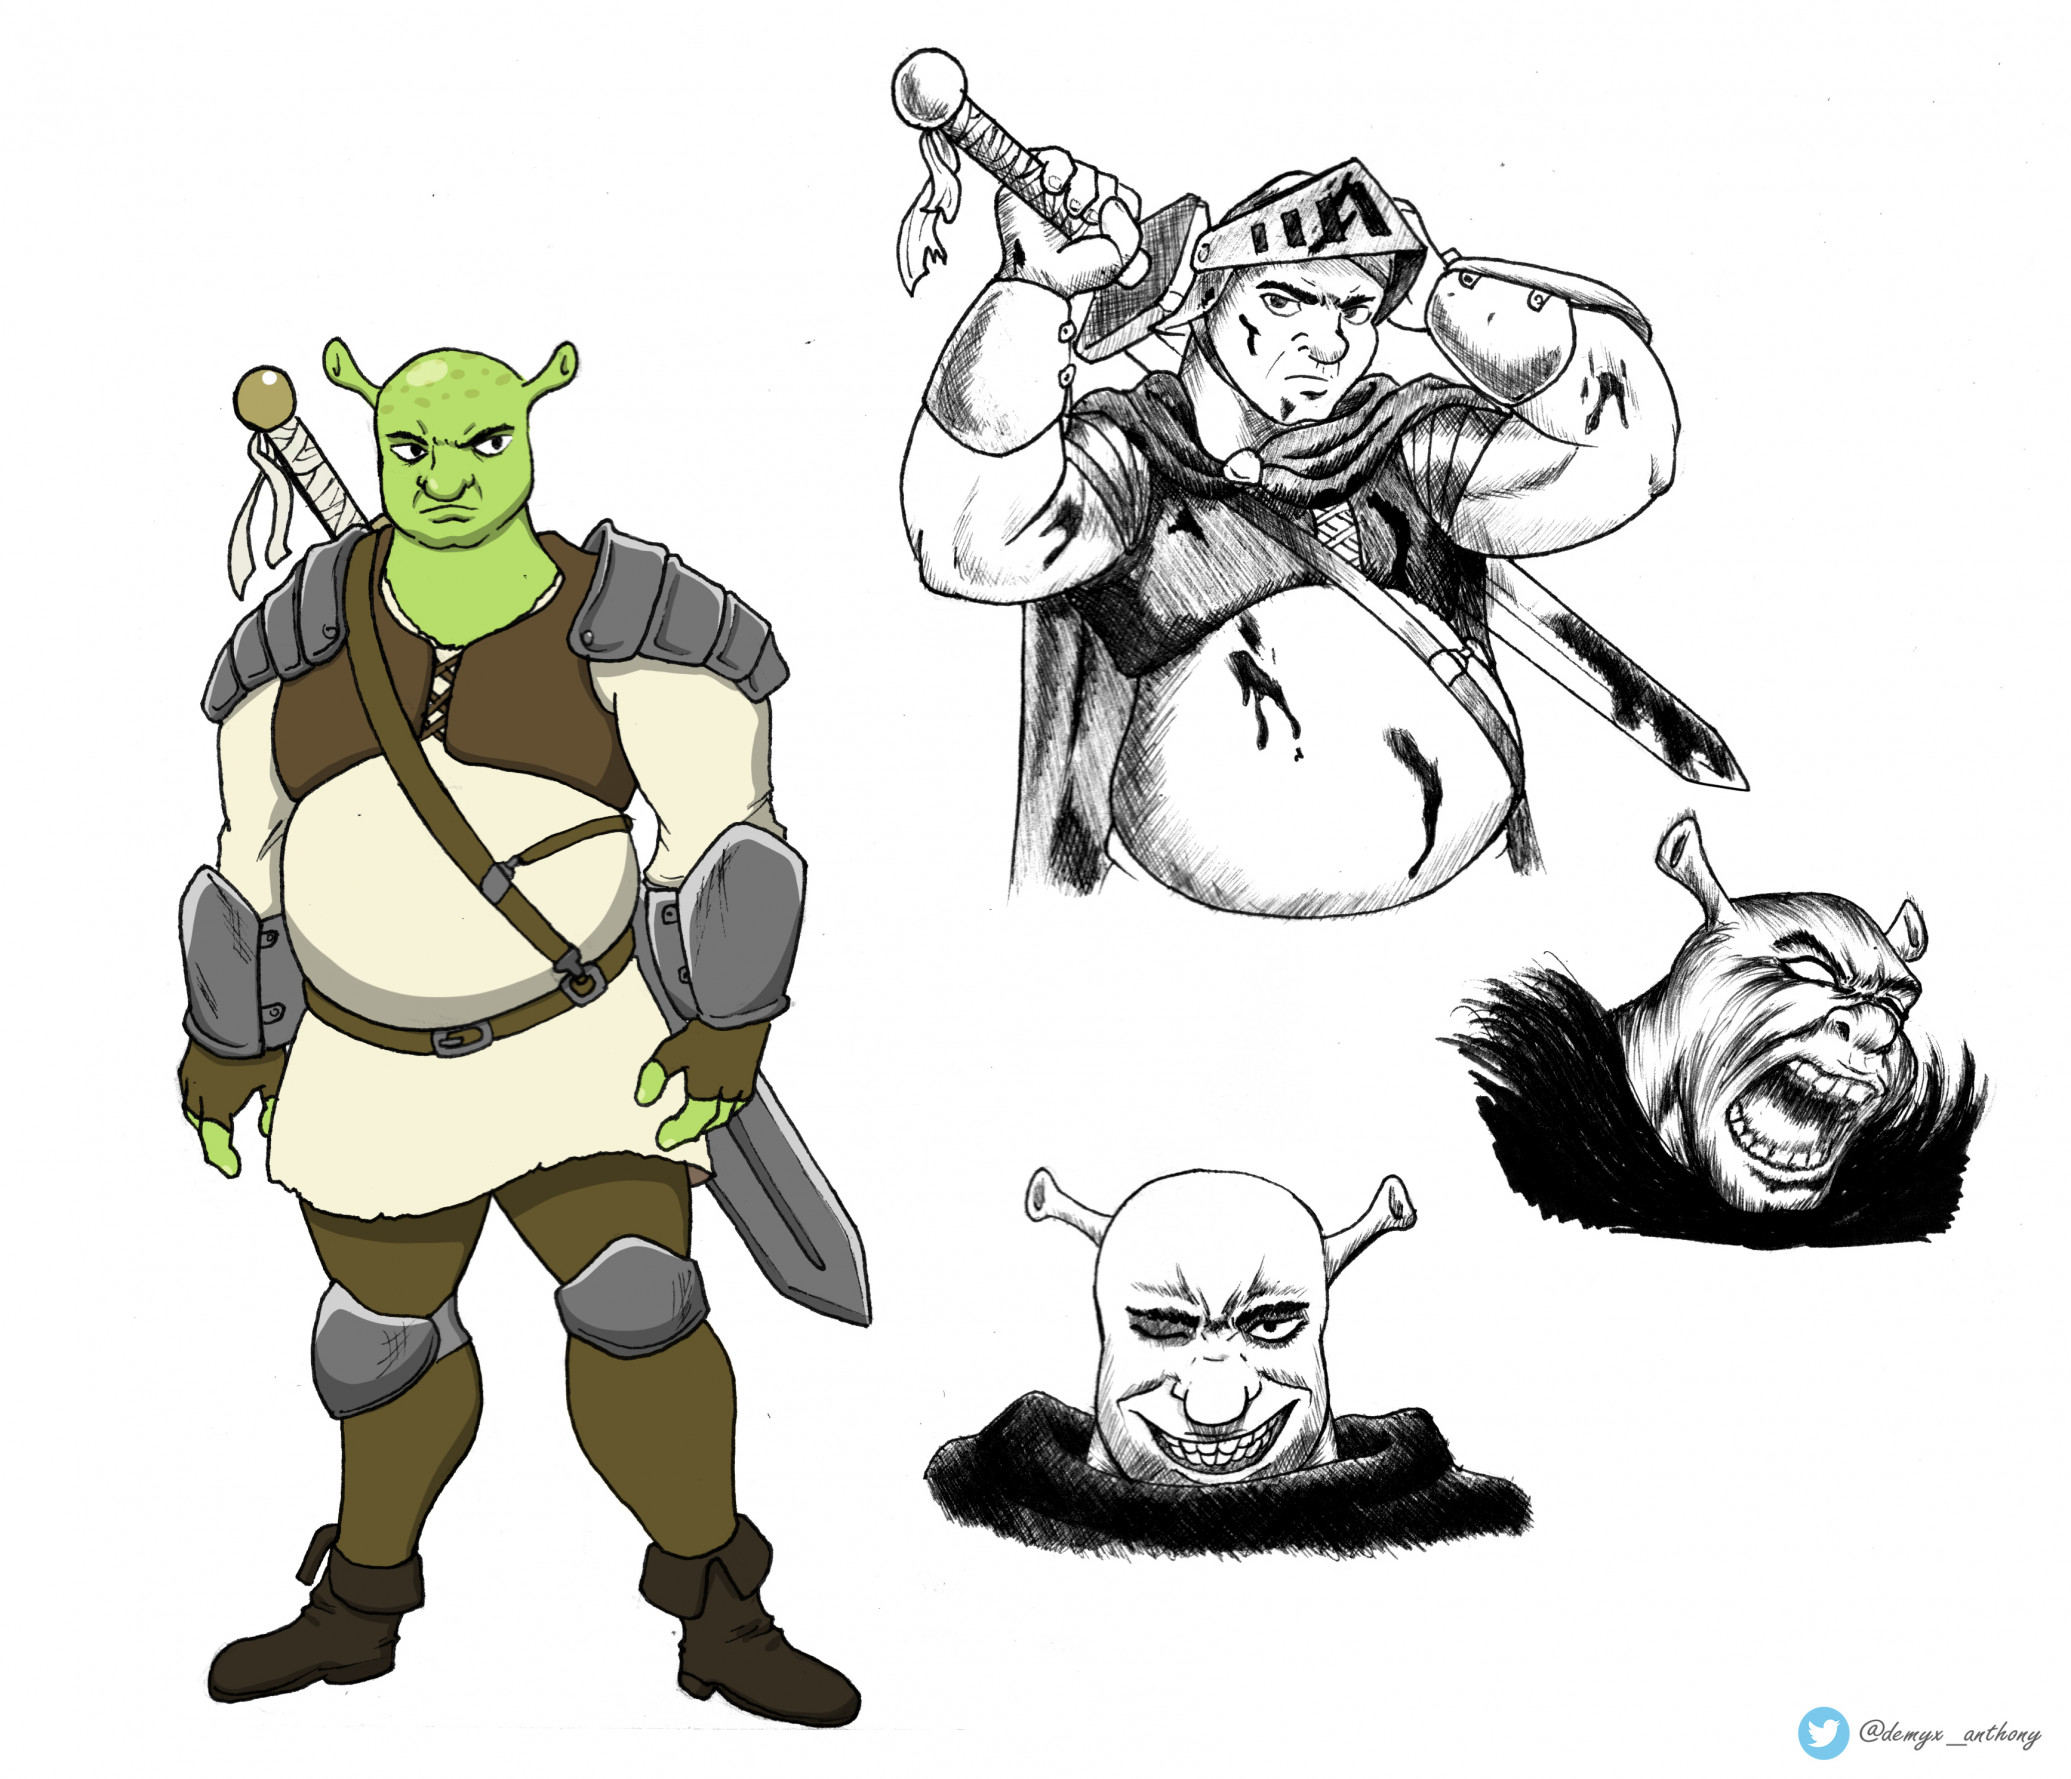 Shrek the no-anime ogre! - Imgflip